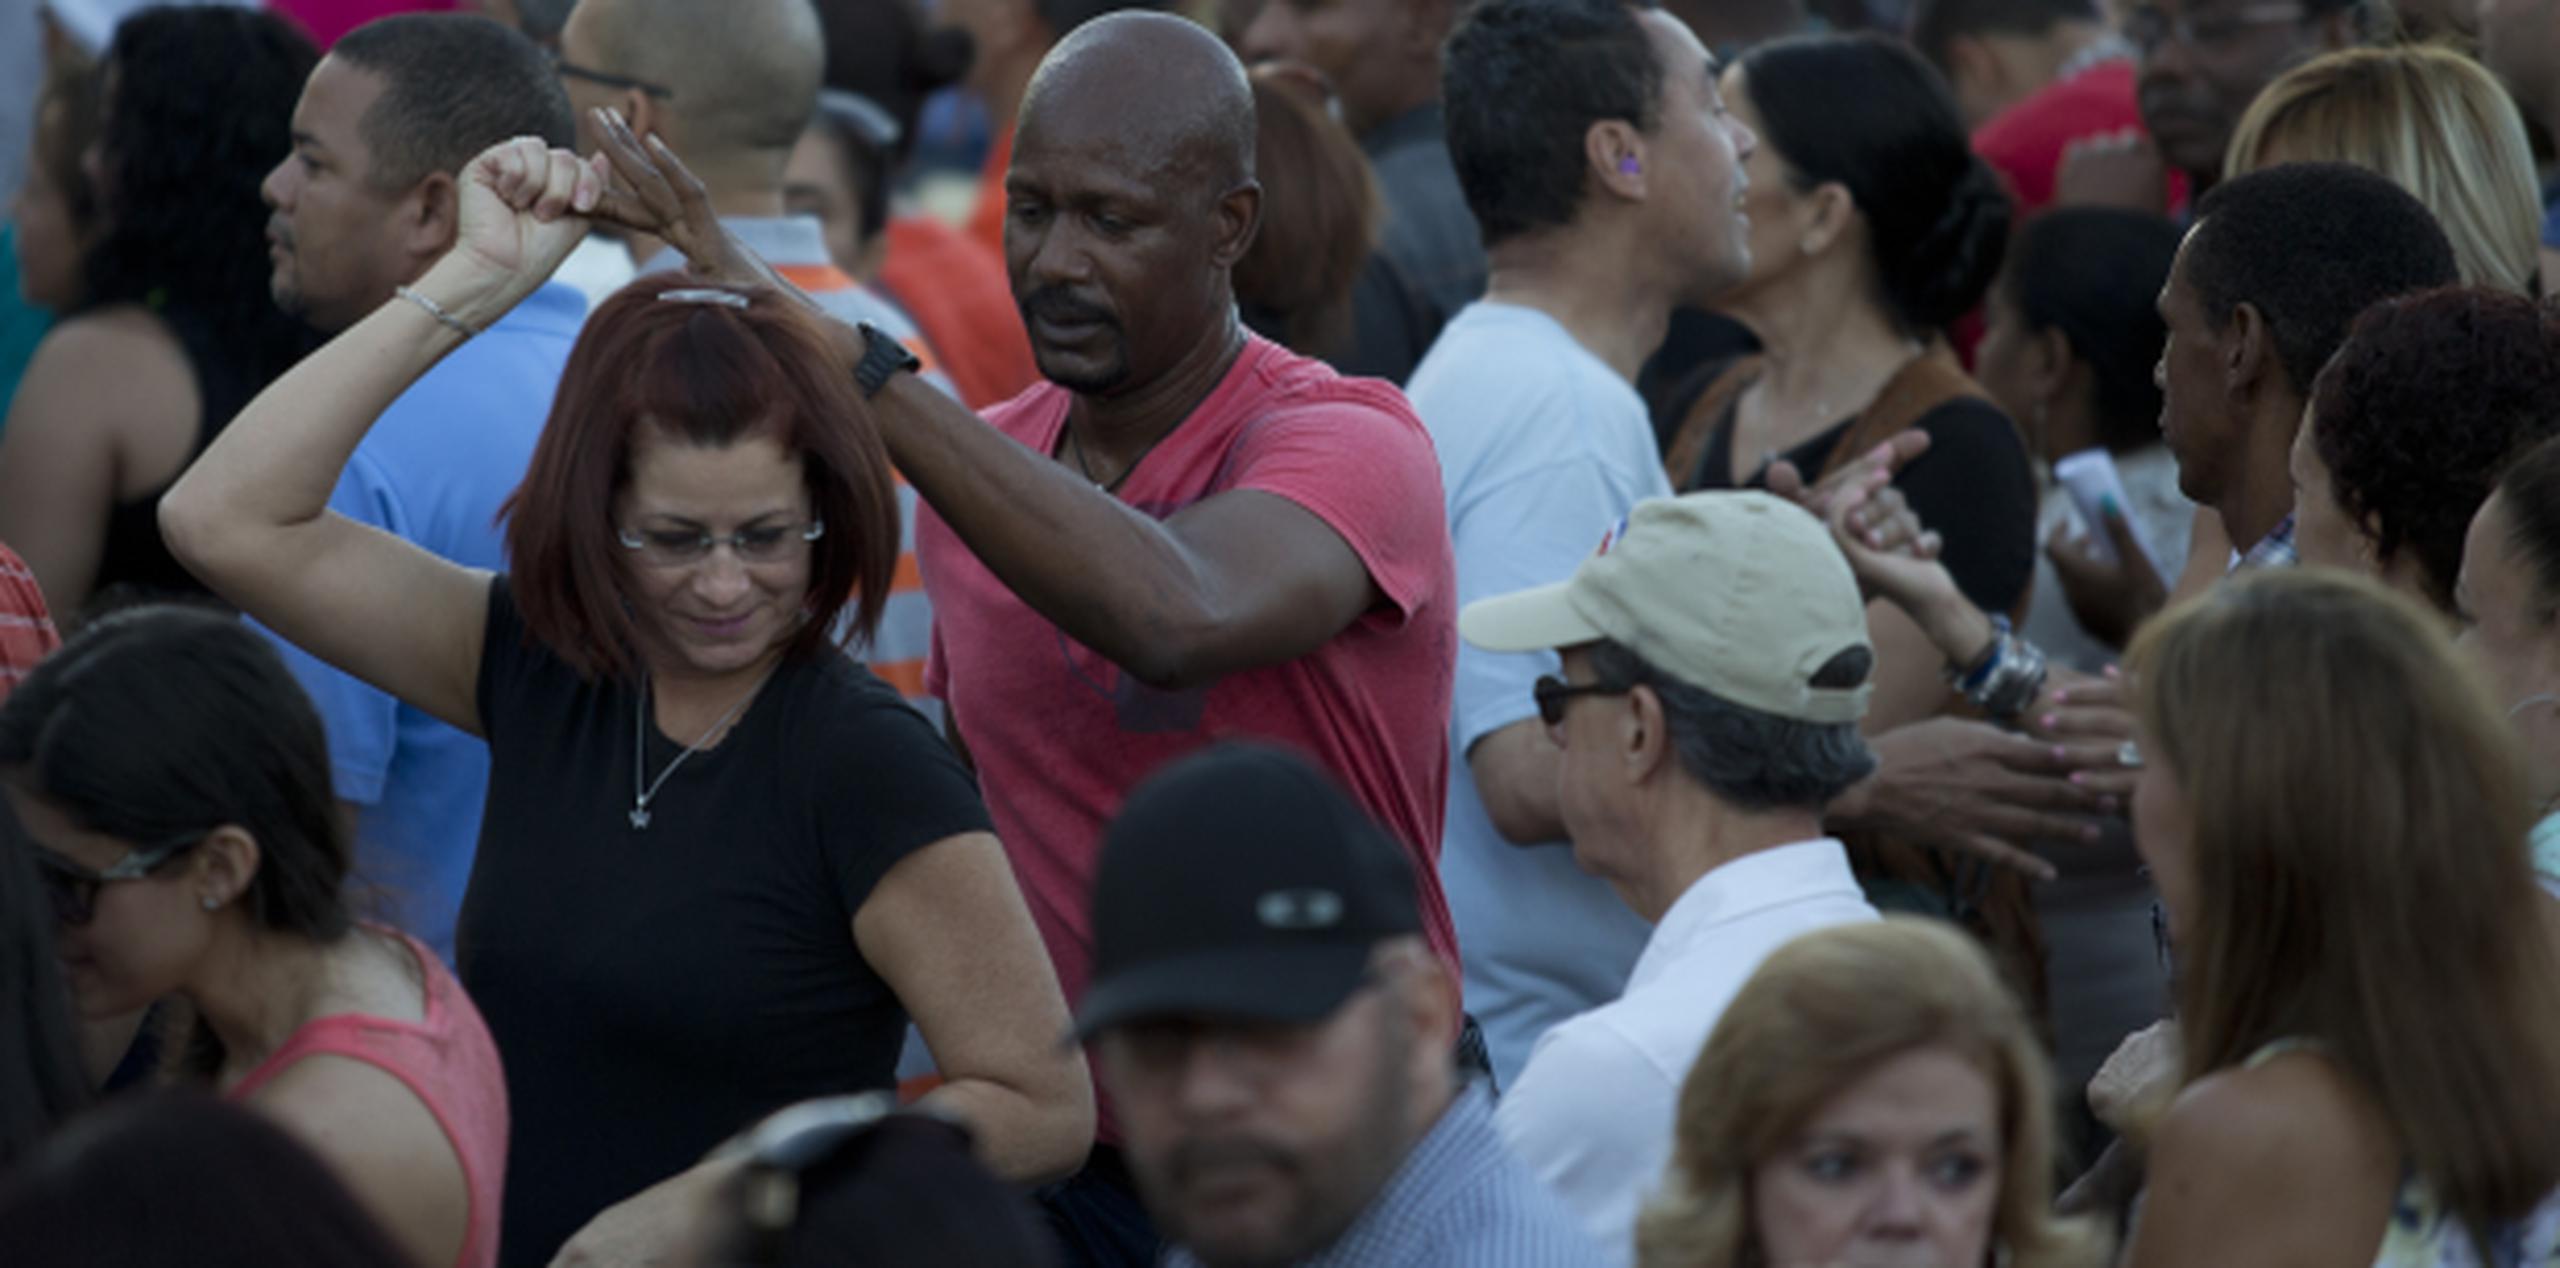 Pasadas las 6:30 p.m., las afueras del llamado “Choliseo” se encontraban abarrotadas de público. (xavier.araujo@gfrmedia.com)